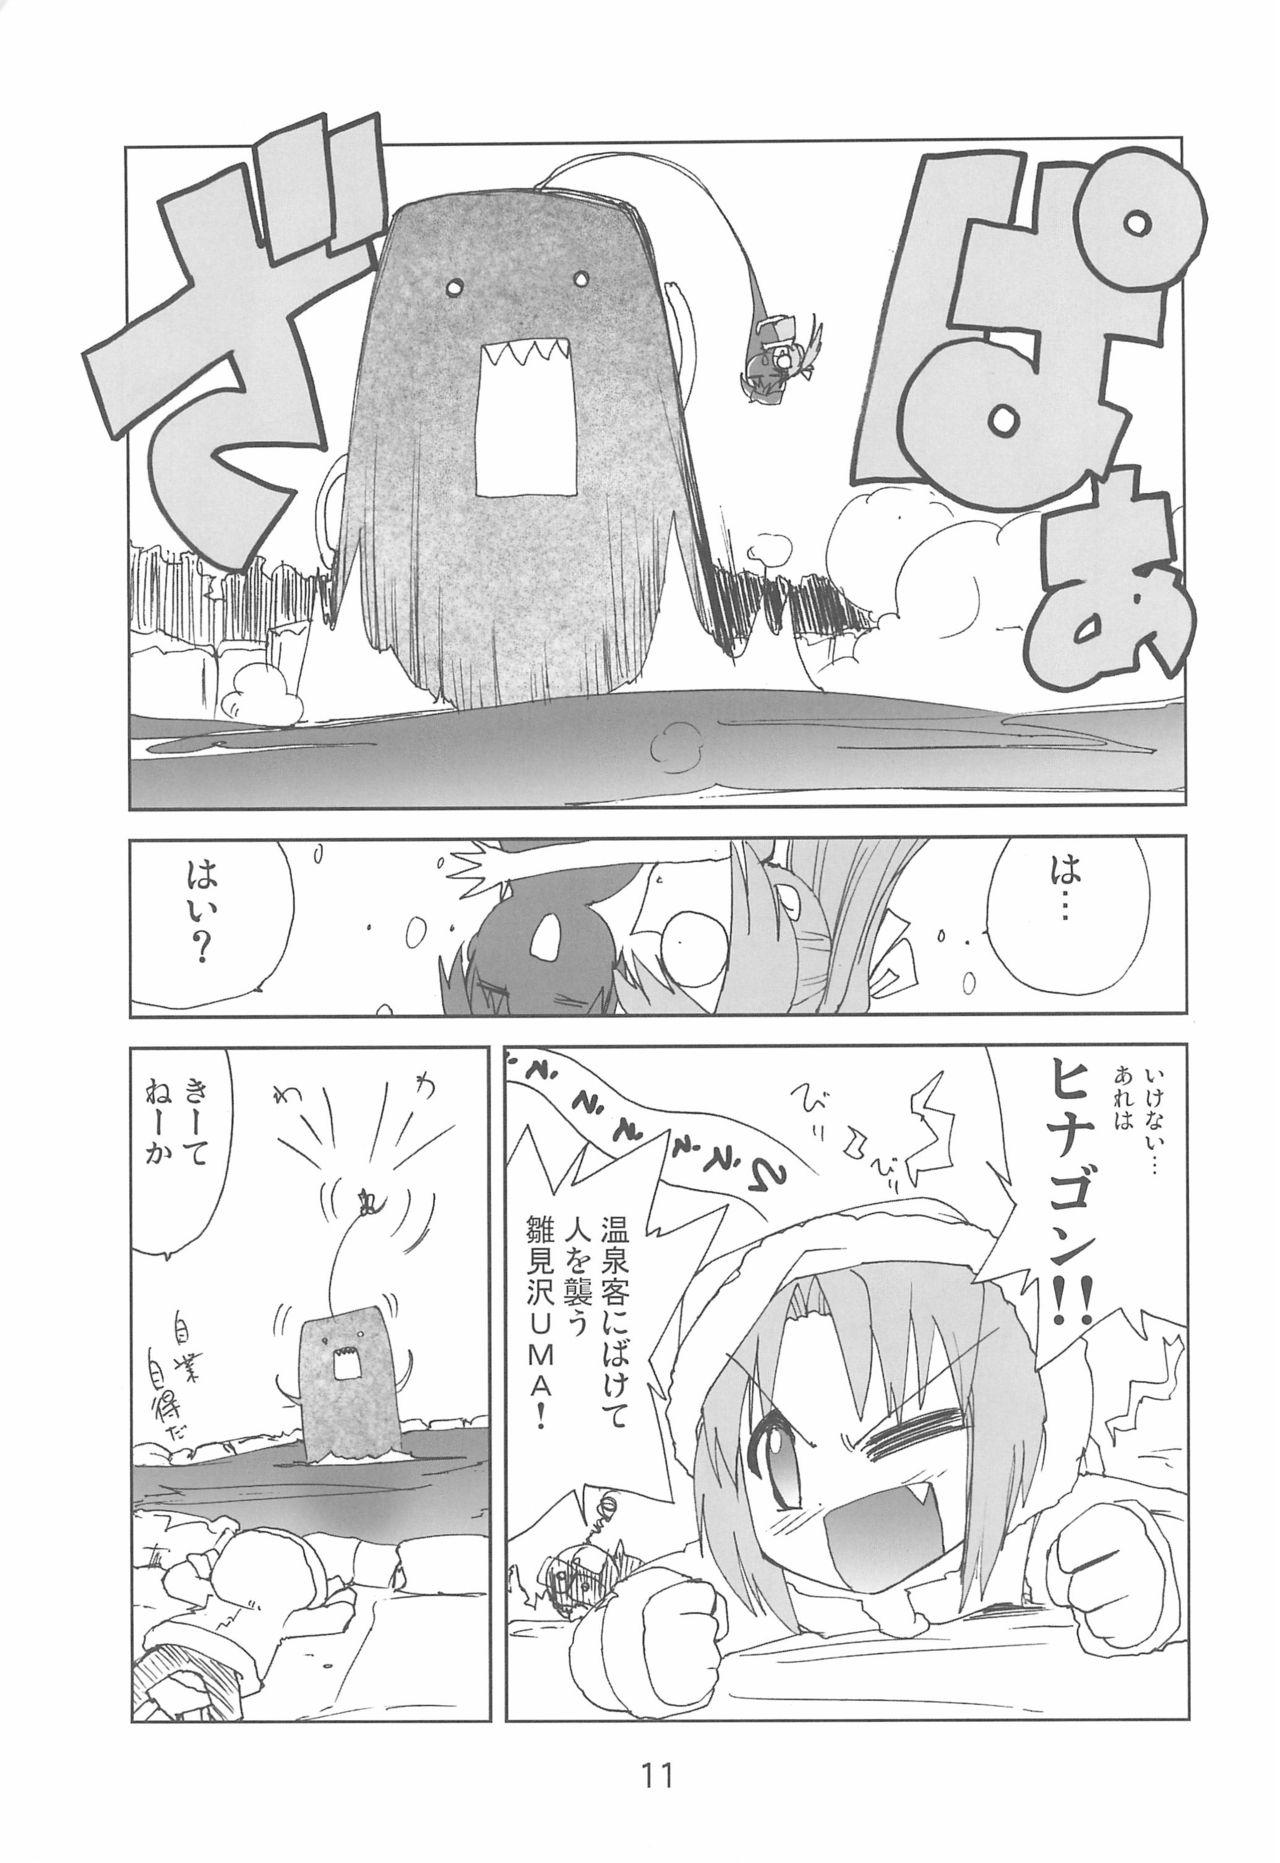 Stroking Fugurashi no Naku Koro ni Kai - Higurashi no naku koro ni | when they cry Spit - Page 11